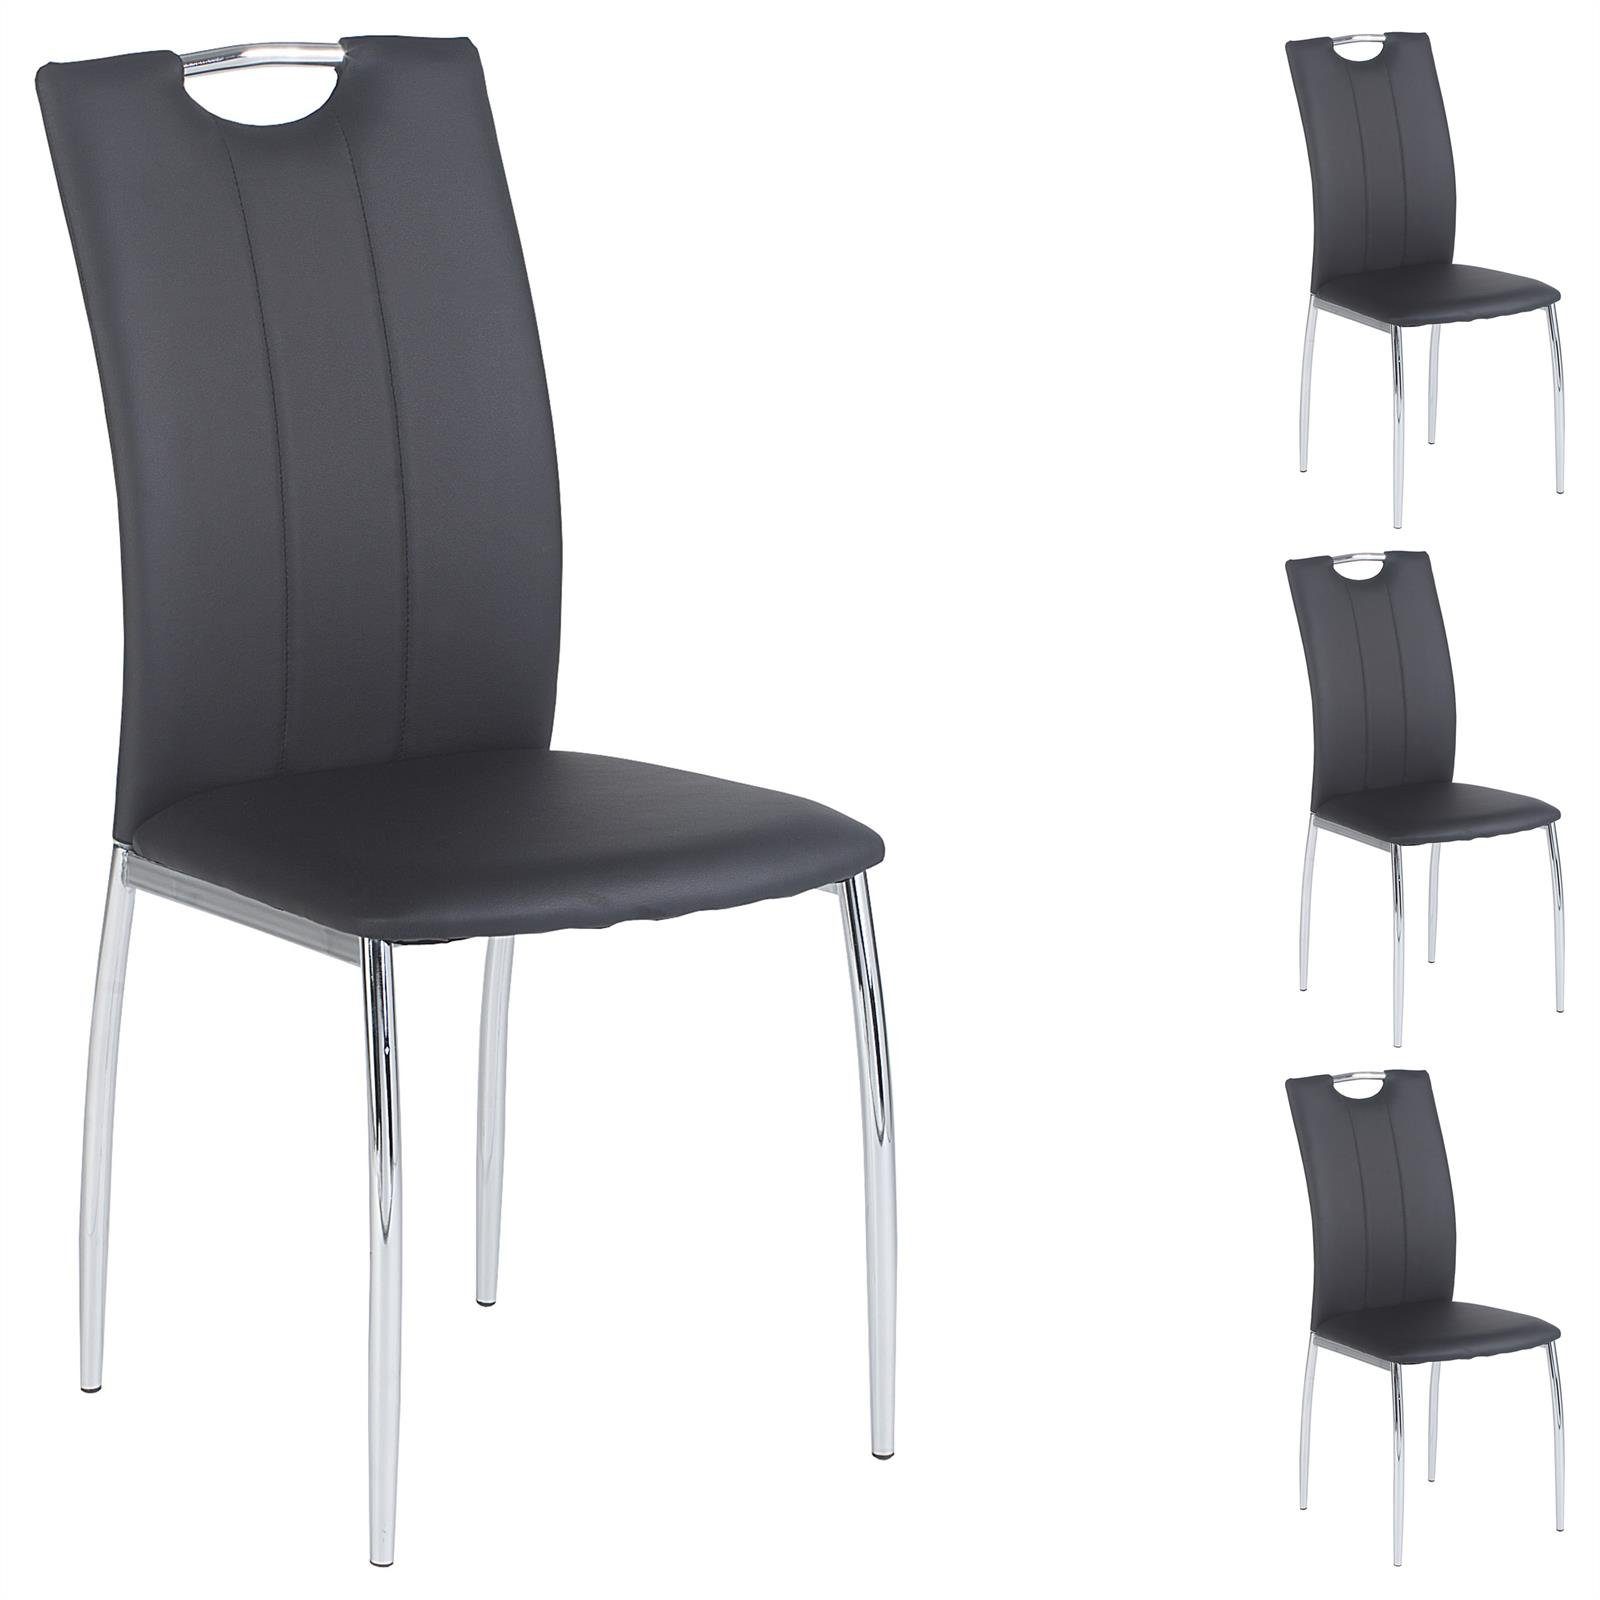 IDIMEX Esszimmerstuhl APOLLO (4 St), 4er SET Esszimmerstuhl Essgruppe Sitzgruppe, 4 Stühle grau schwarz wei